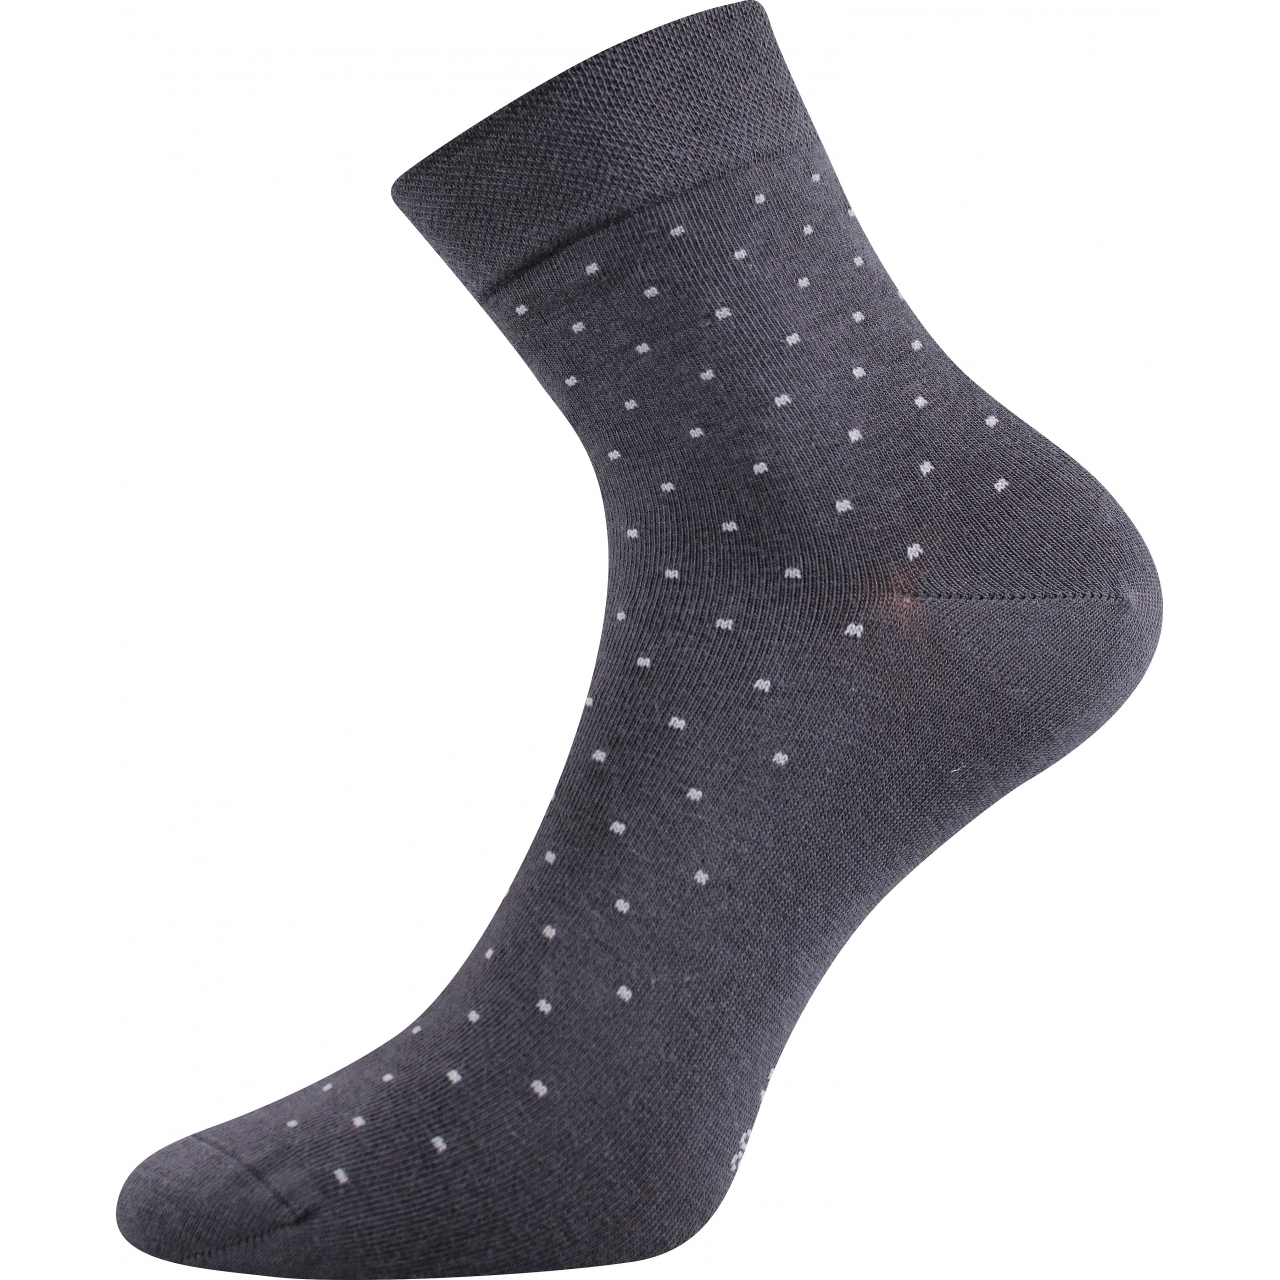 Ponožky dámské elegantní Lonka Fiona - tmavě šedé, 39-42